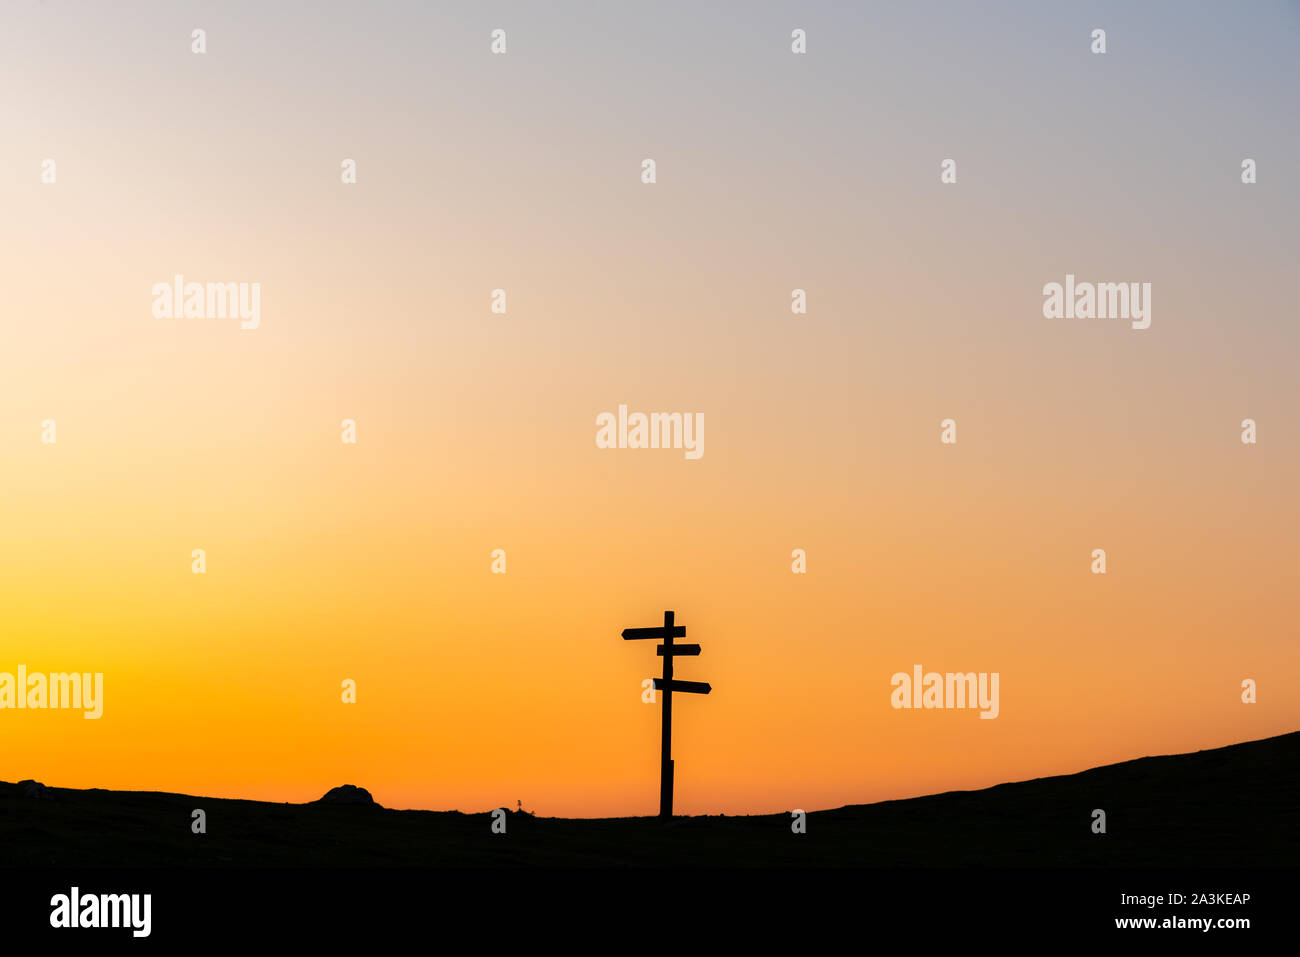 21/8-19, Mugarra, Pais Vasco, Spagna. Un solitario indicazioni del cartello in legno con tre segni in diverse direzioni stagliano contro un bel Cielo di tramonto. Foto Stock